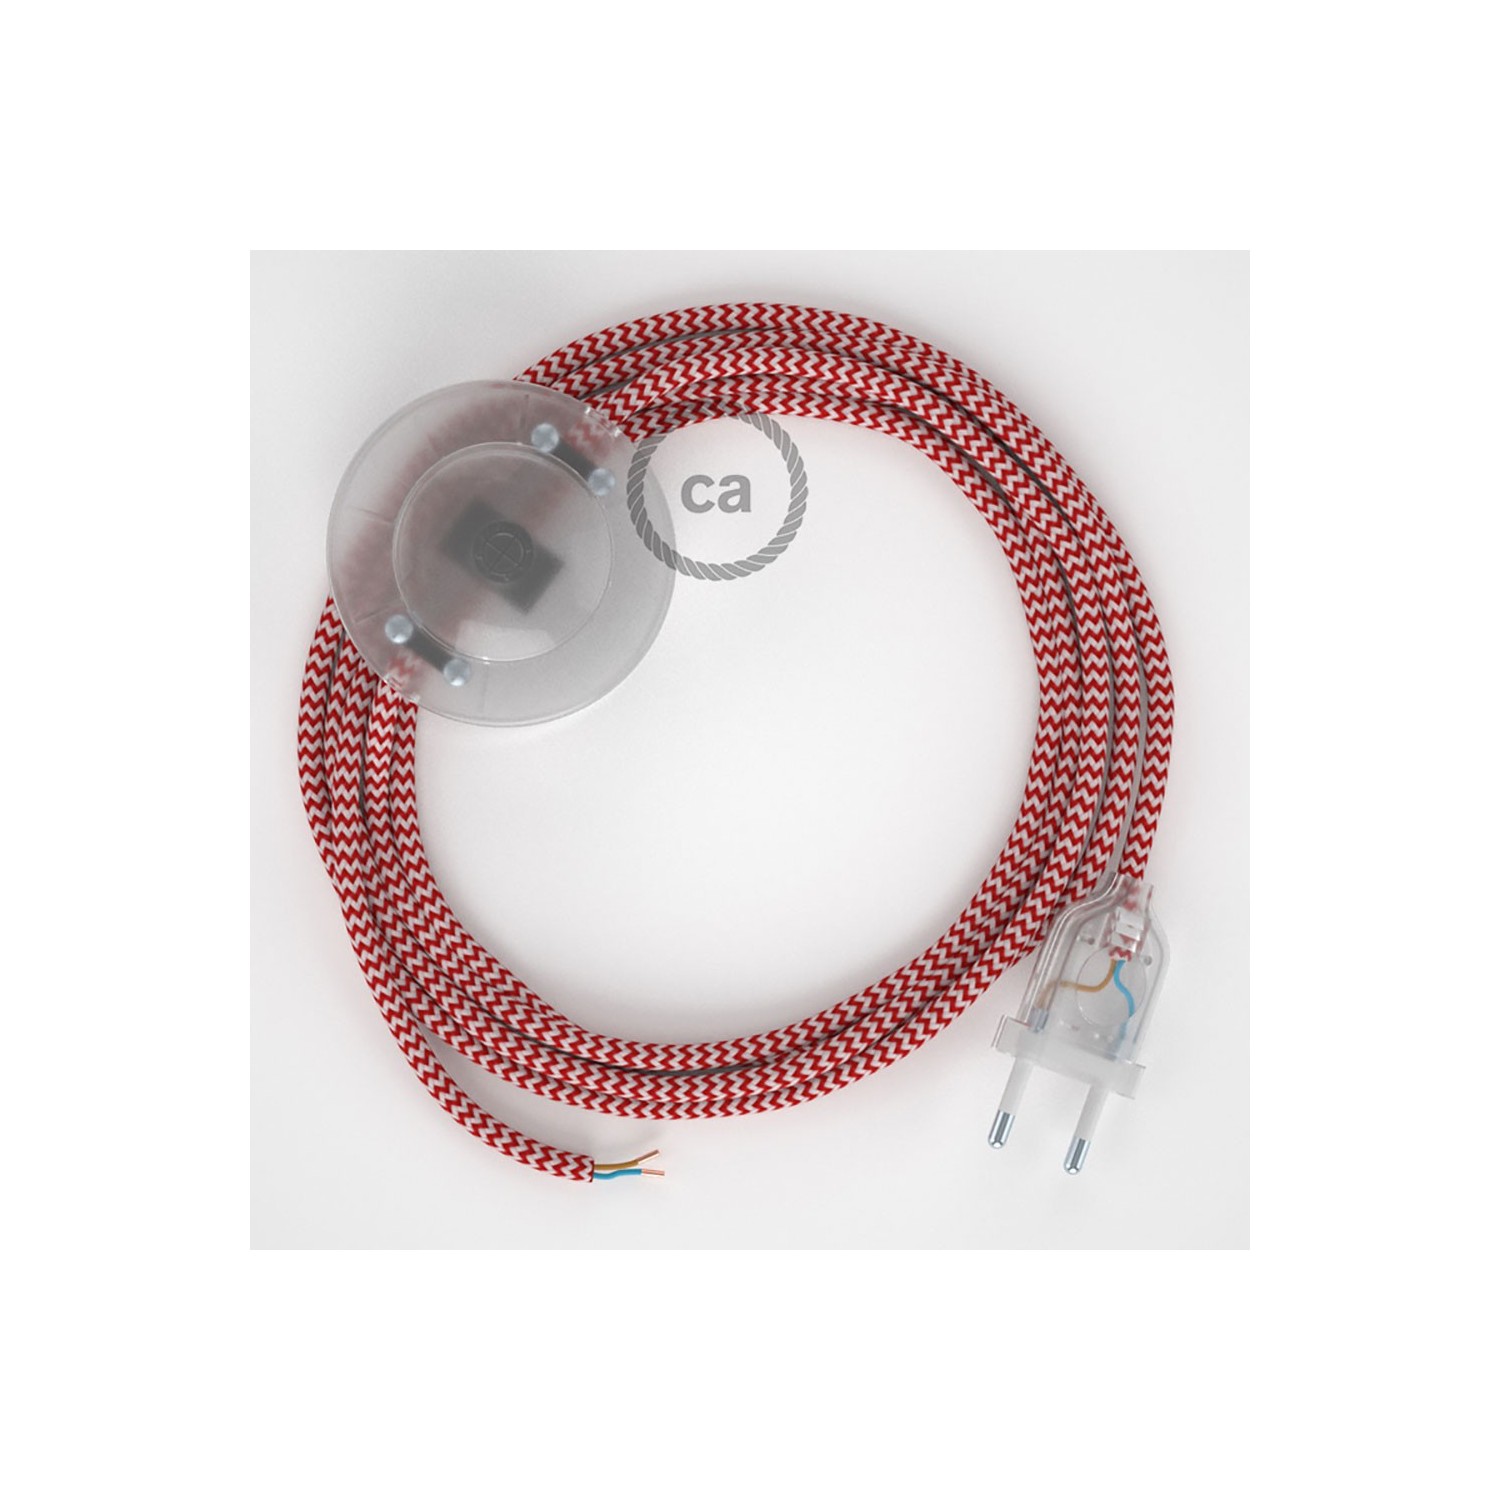 Stehleuchte Anschlussleitung RZ09 Zick-Zack Weiß Rot Seideneffekt 3 m. Wählen Sie aus drei Farben bei Schalter und Stecke.